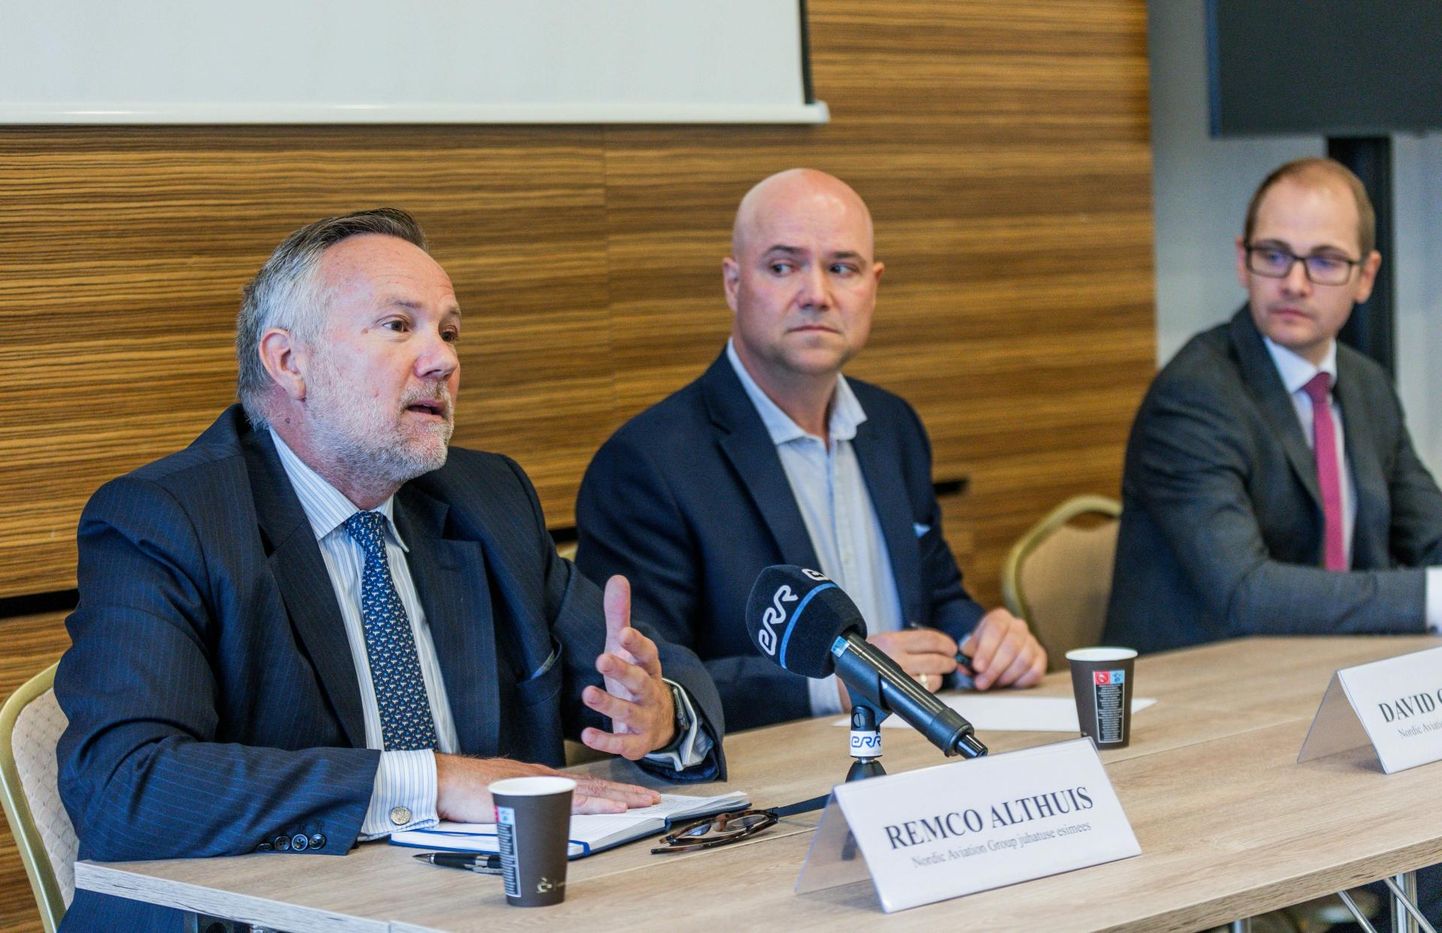 Hapude nägudega Nordic Aviation Groupi uus juht Remco Althuis ning nõukogu esimees David O’Brock ja Sander Salmu rahvale selgitamas, mis lennufirmaga järsku juhtus. 